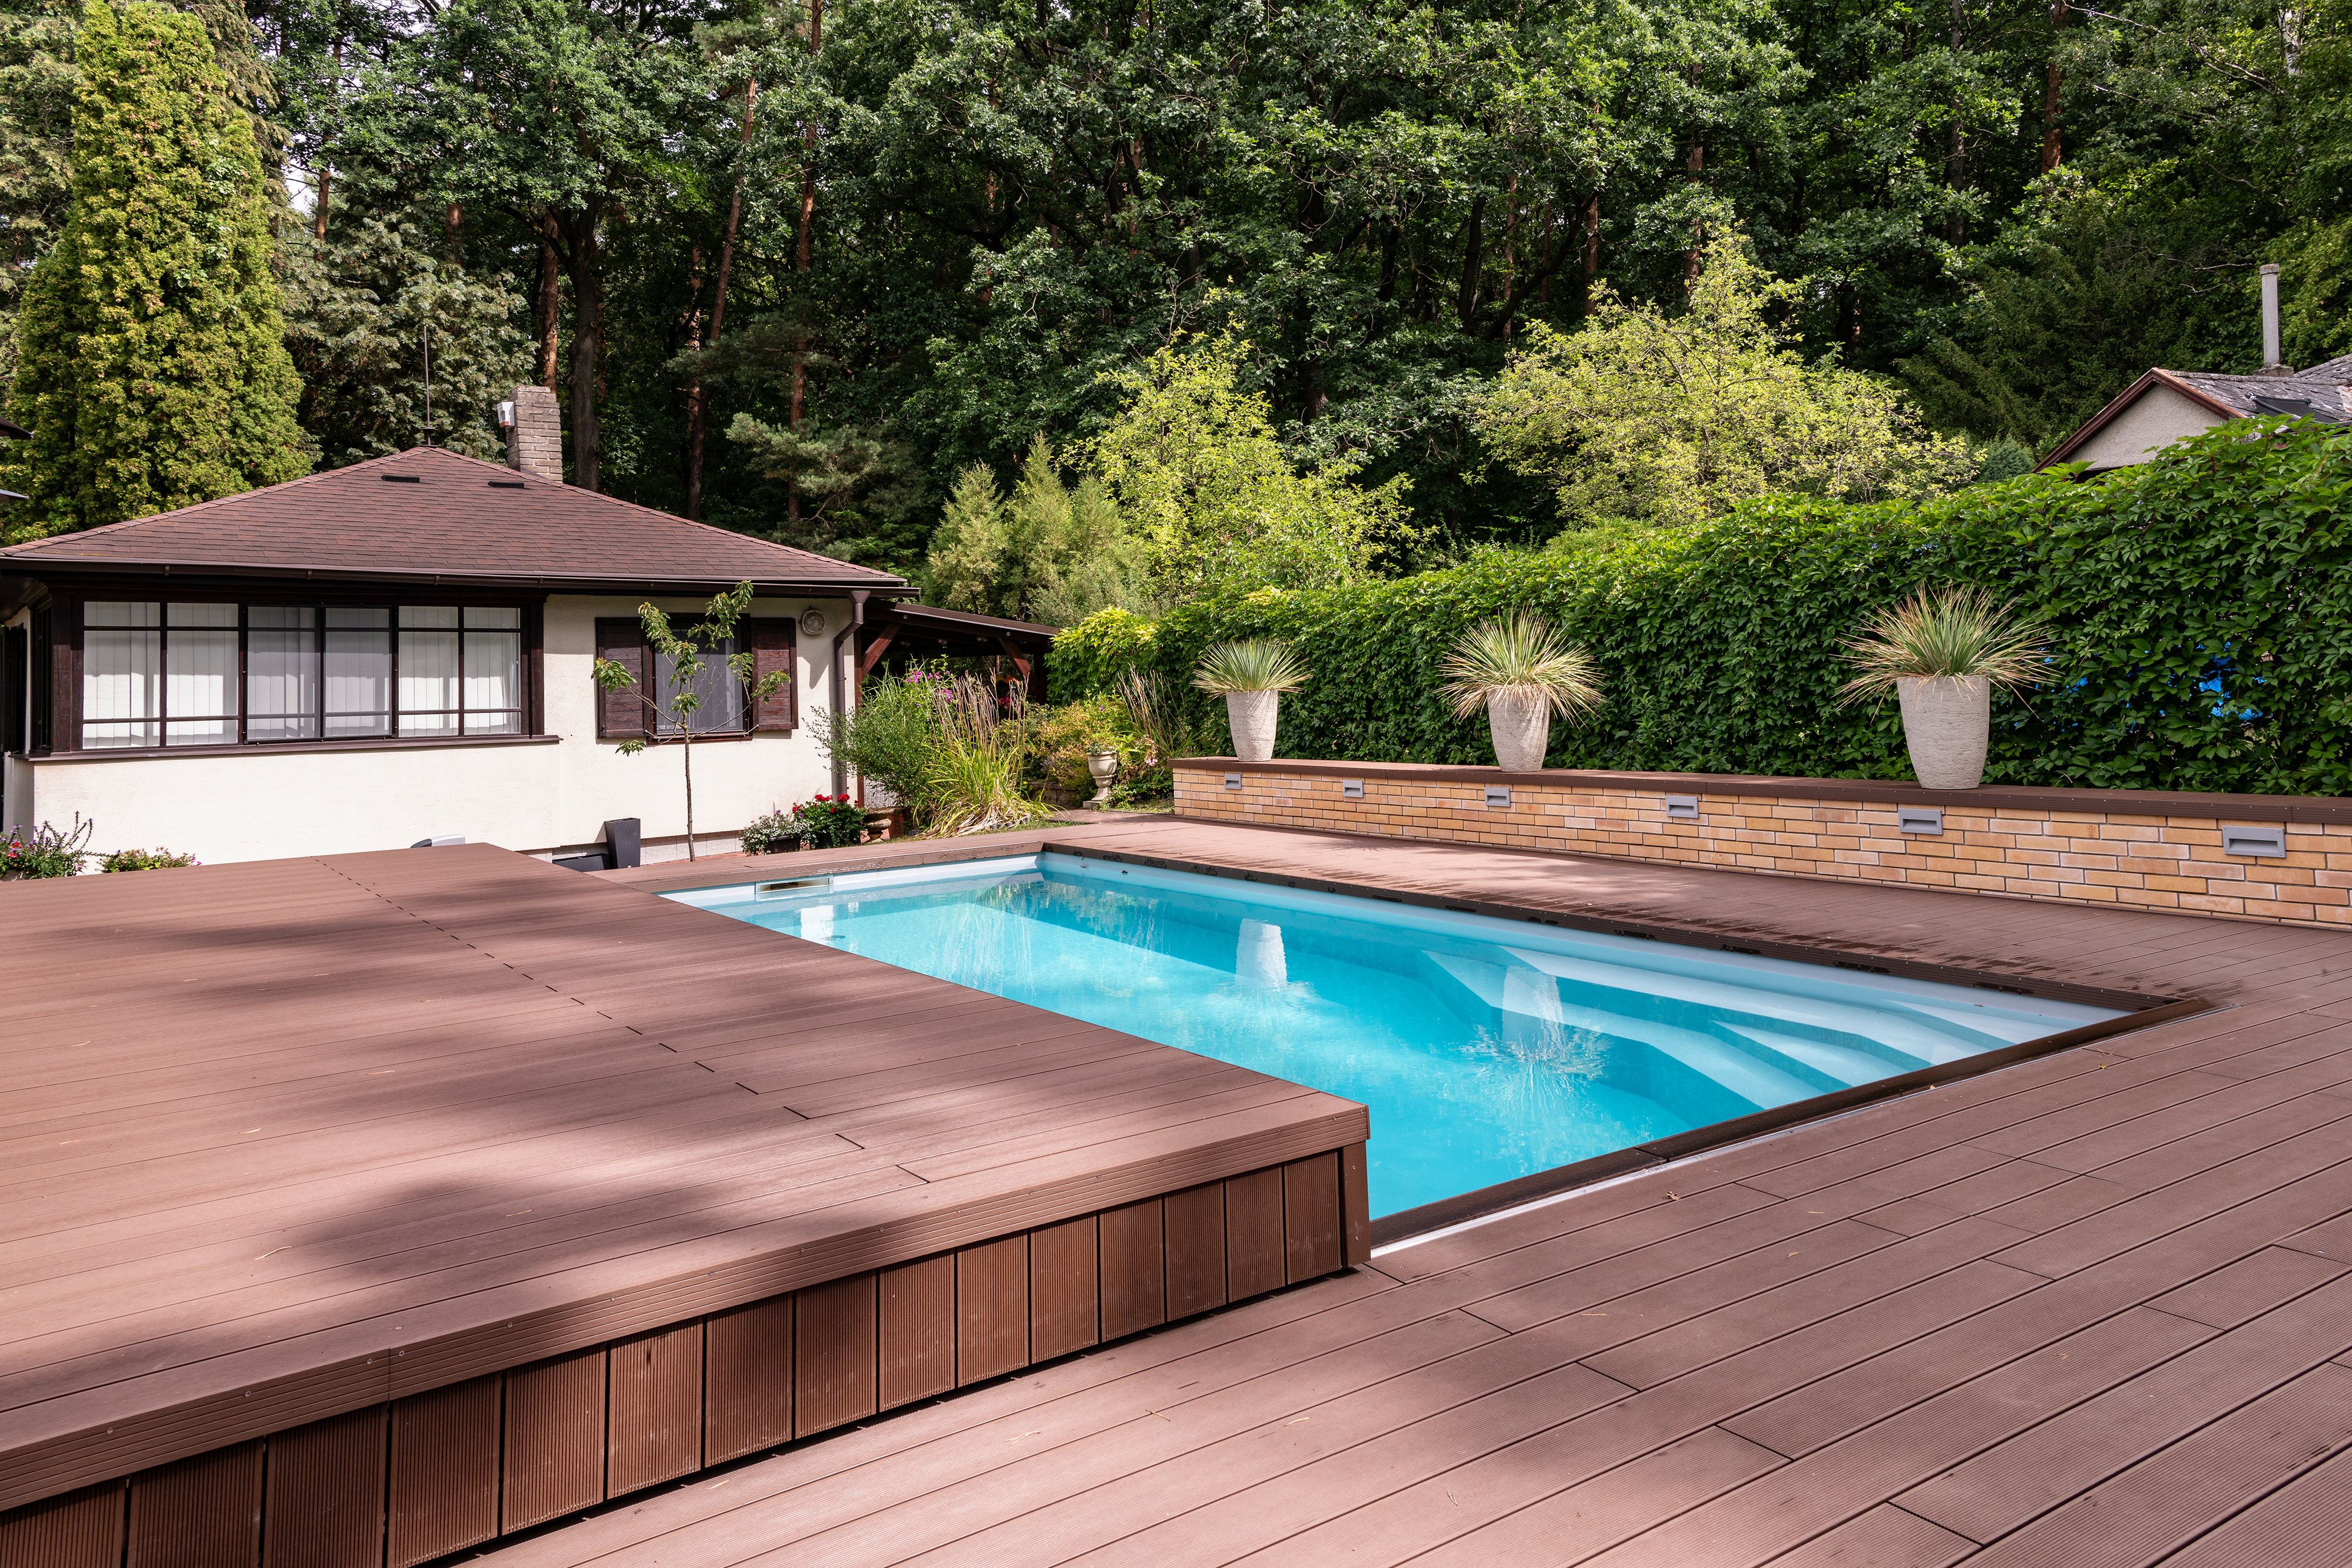 Výhody bazénového zakrytí posuvnou terasou | IMAGINOX